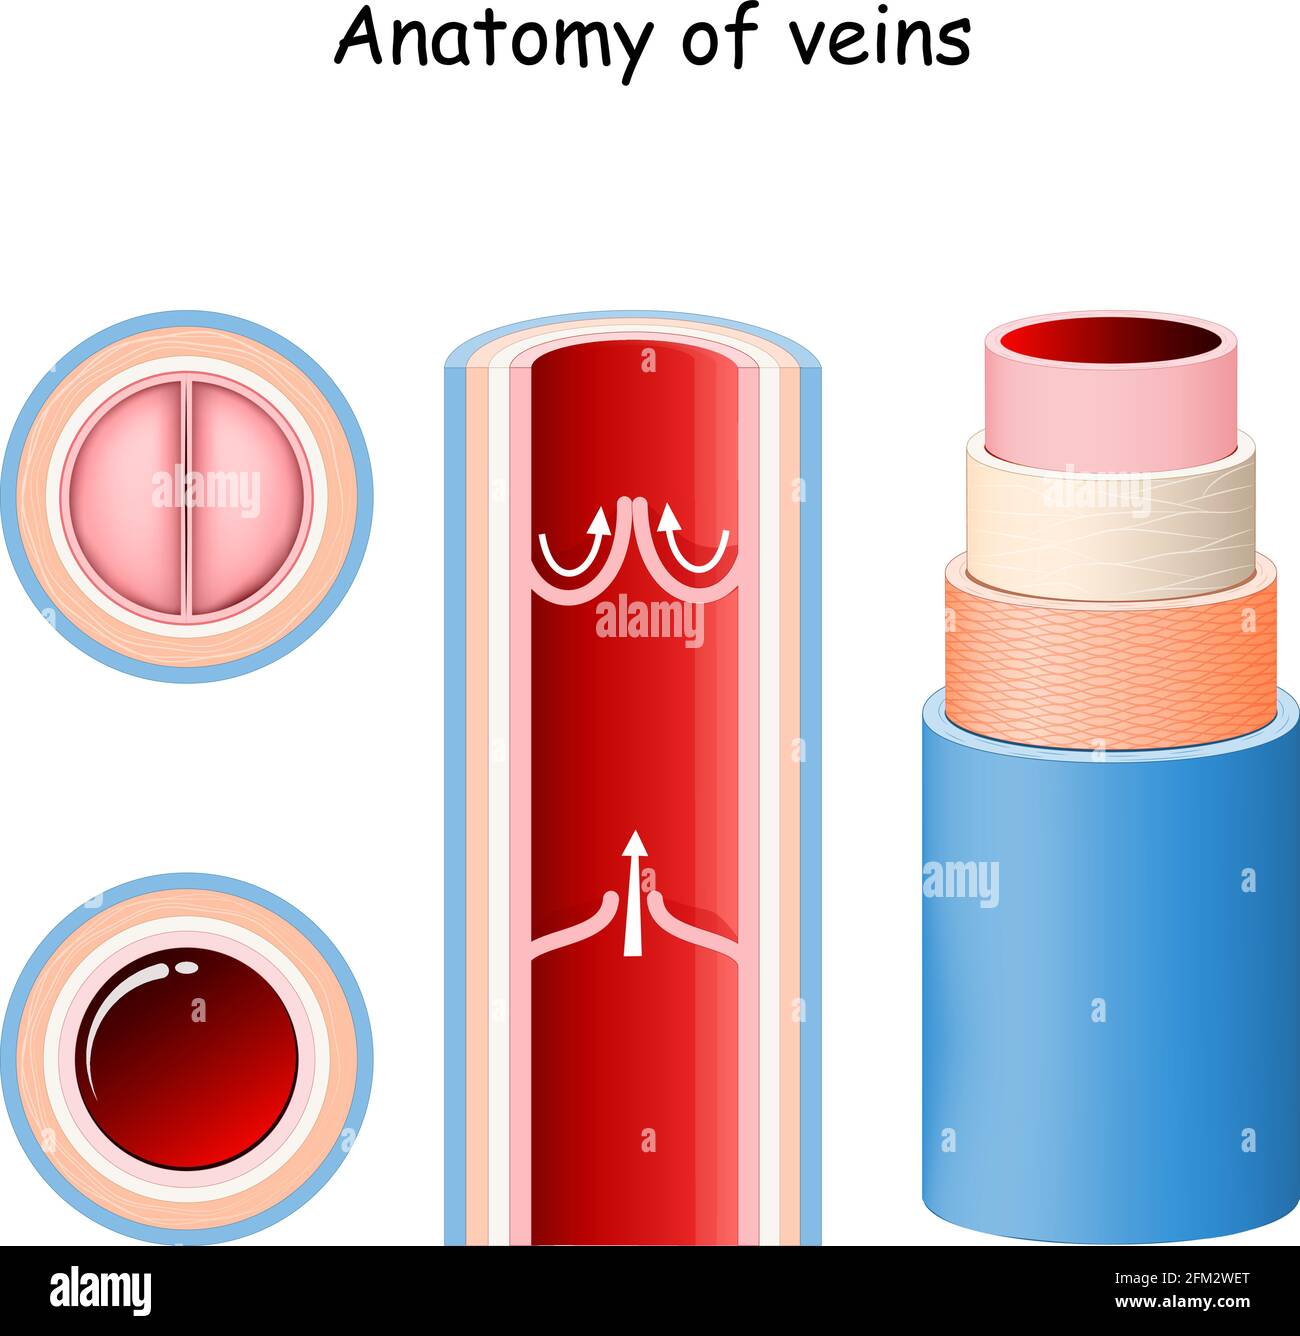 Anatomia della vena. Struttura del vaso sanguigno. Primo piano delle valvole. Sezione longitudinale e trasversale della vena. Illustrazione vettoriale Illustrazione Vettoriale